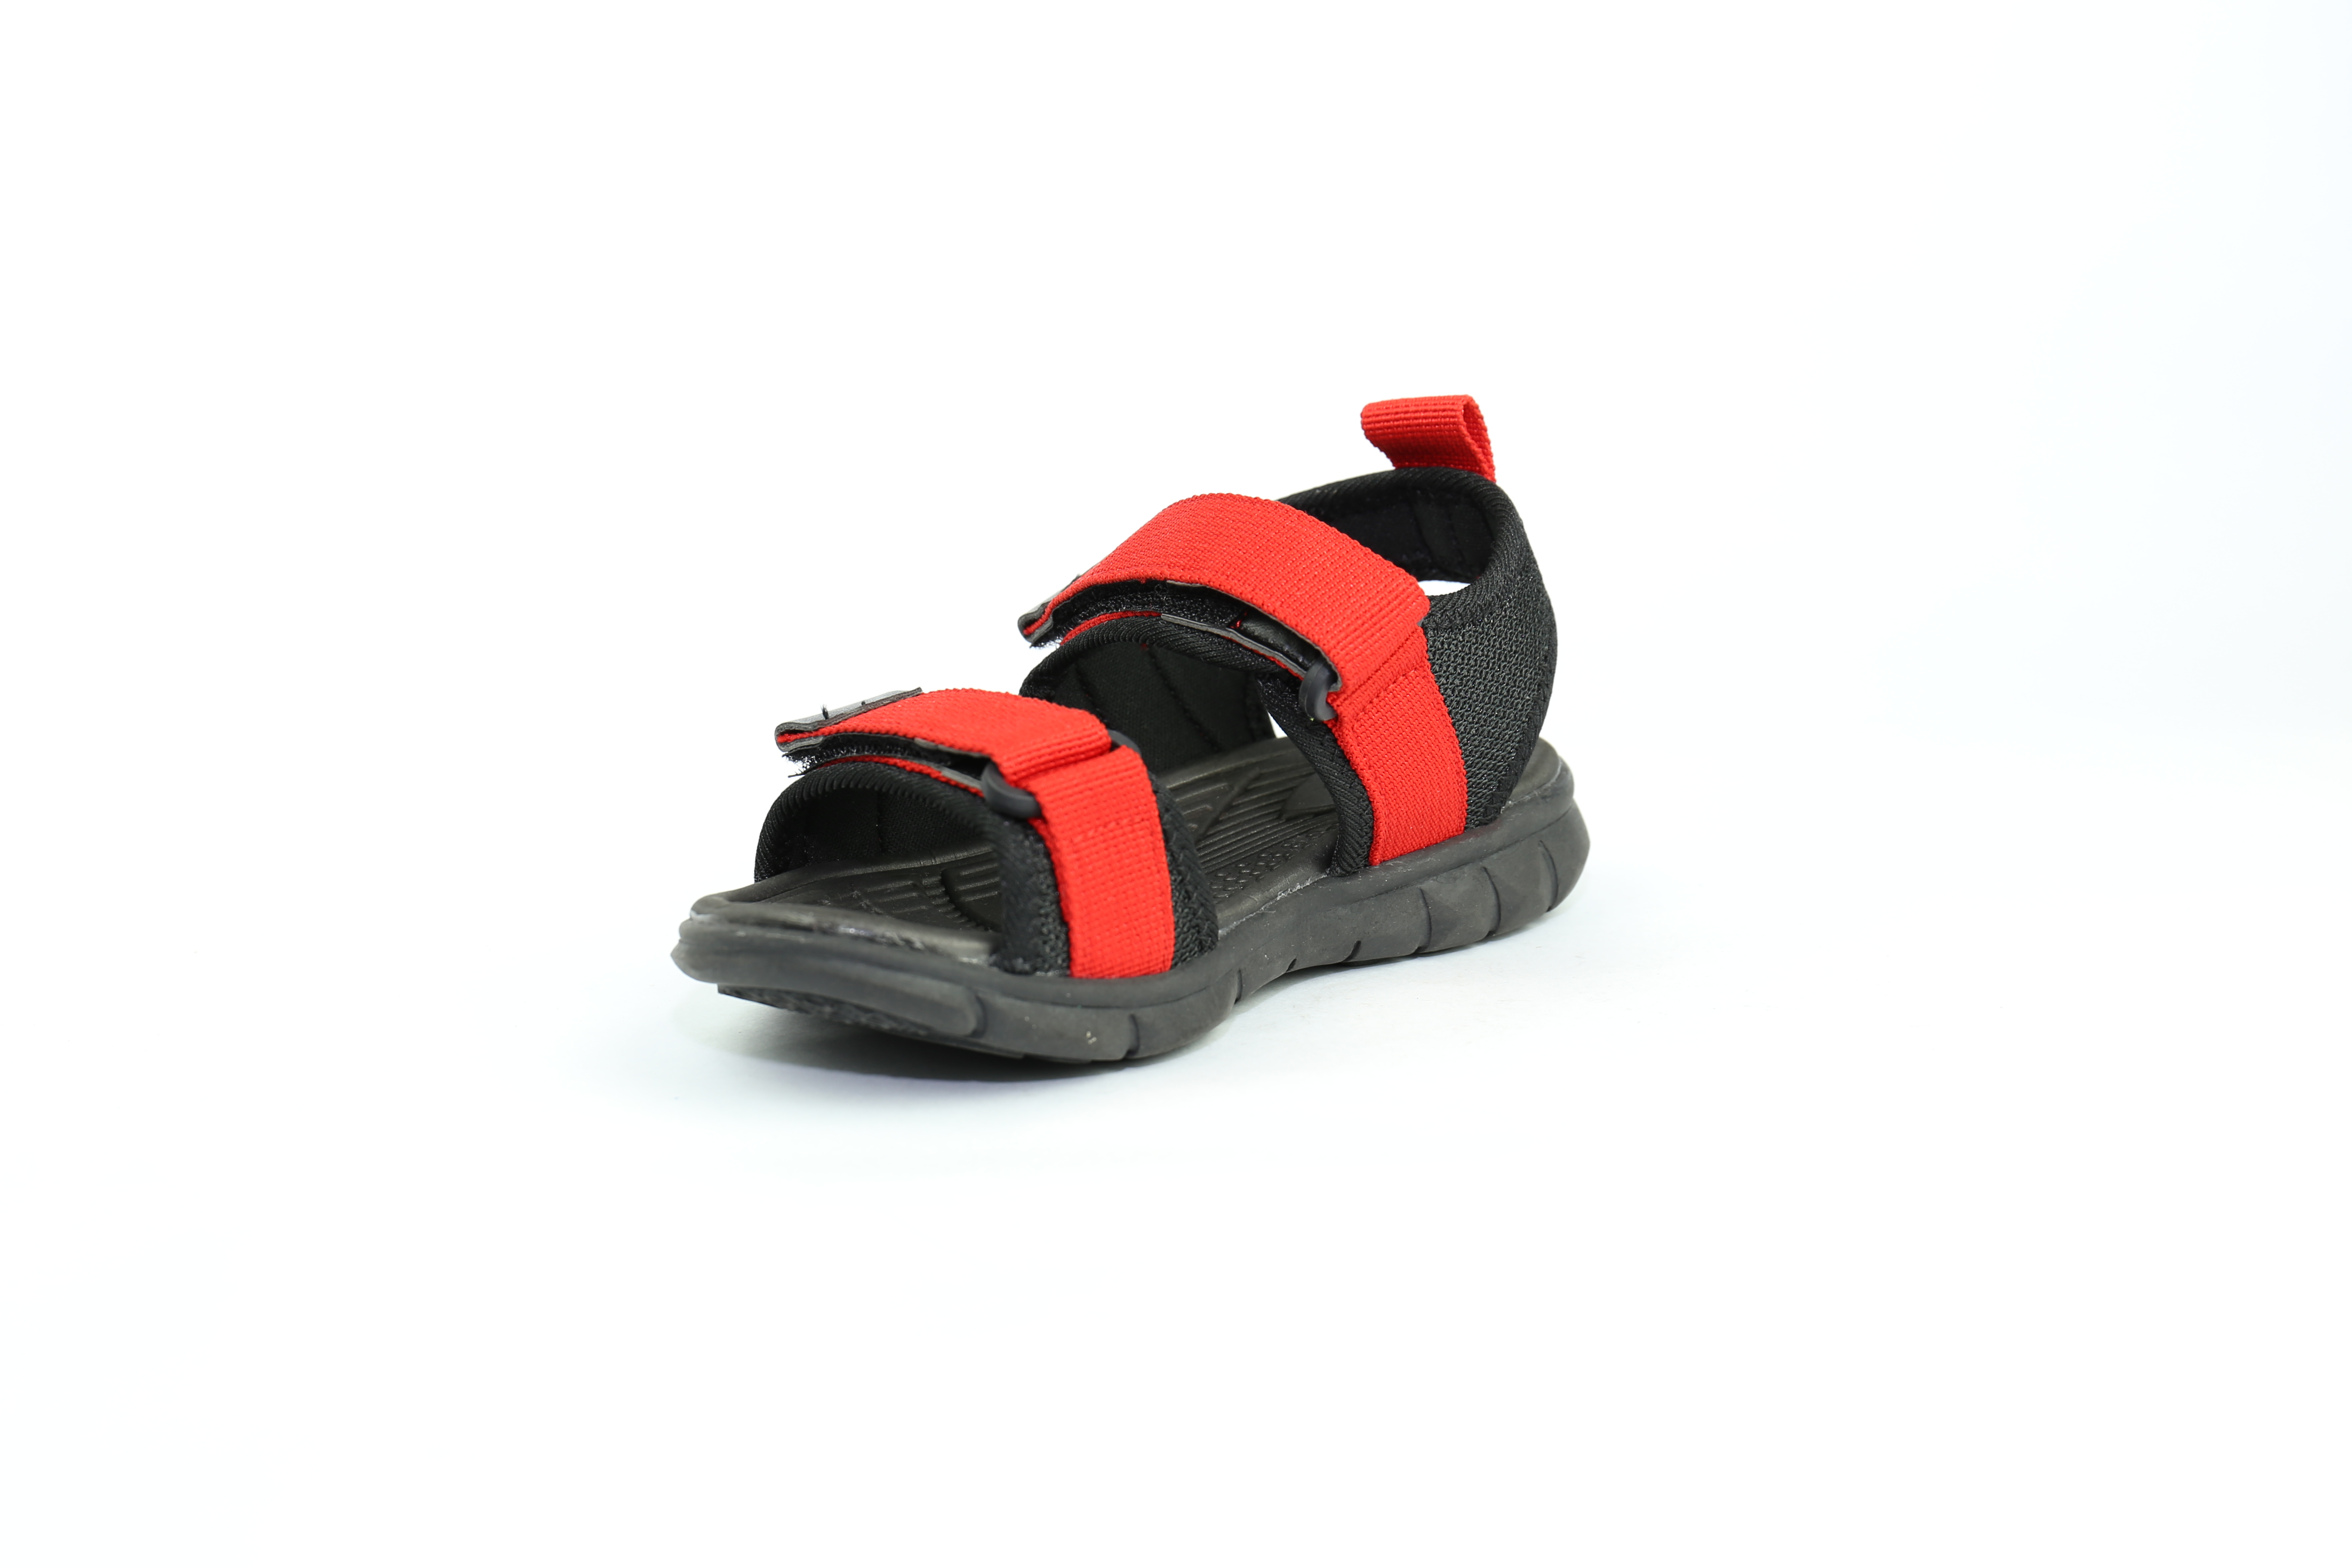 Xăng đan cho bé trai ưa vận động Crown Uk Active sandals Crown Space Cruk531.18.R - Đỏ (size